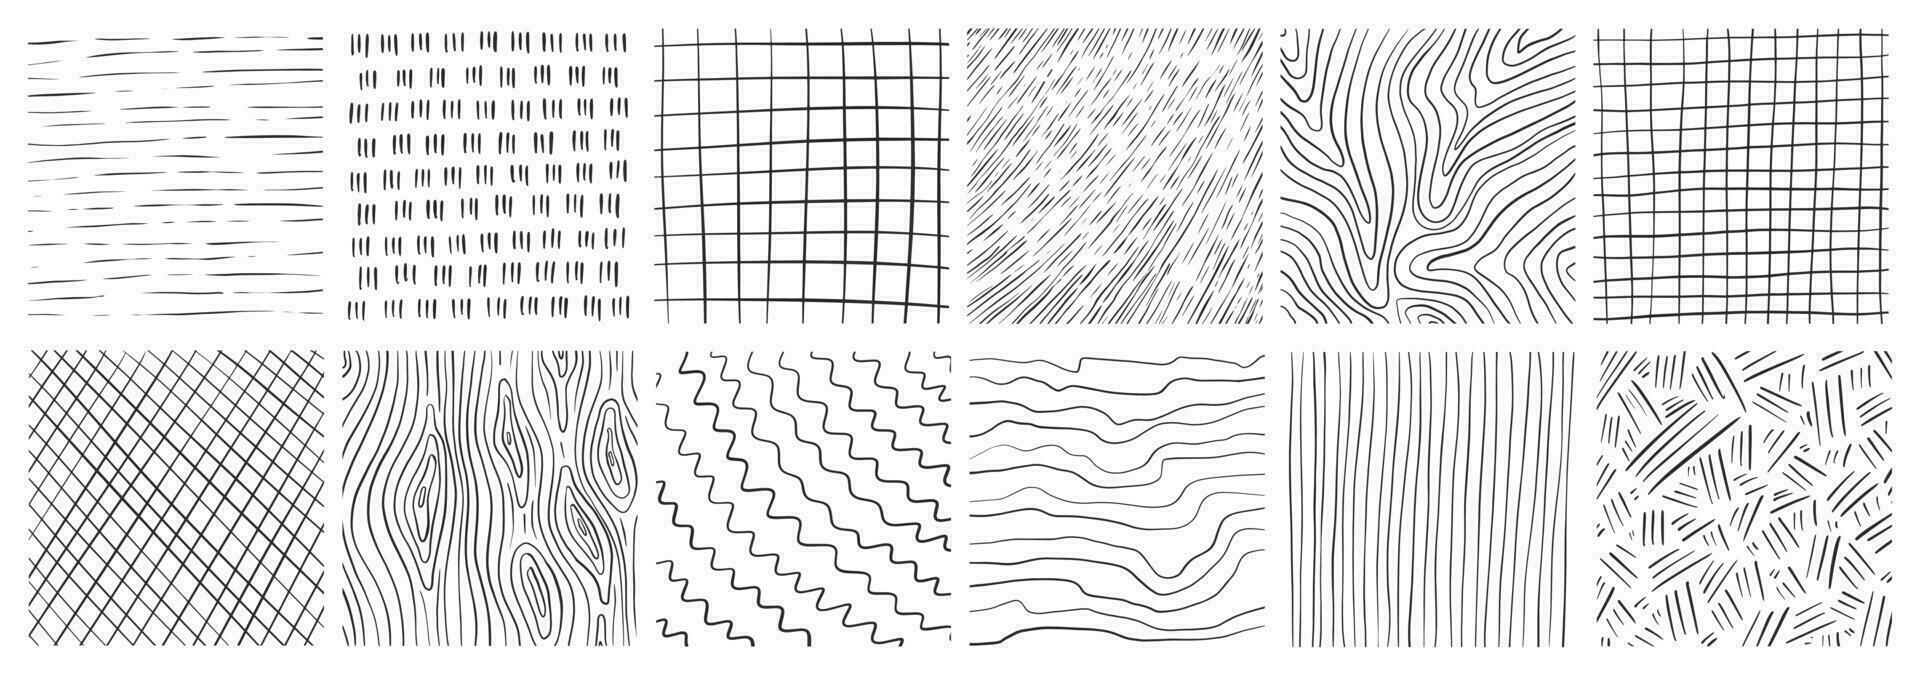 uppsättning av hand dragen textur med annorlunda penna mönster. krysslucka, regn, trä, spiral och rader. vektor illustration på vit bakgrund